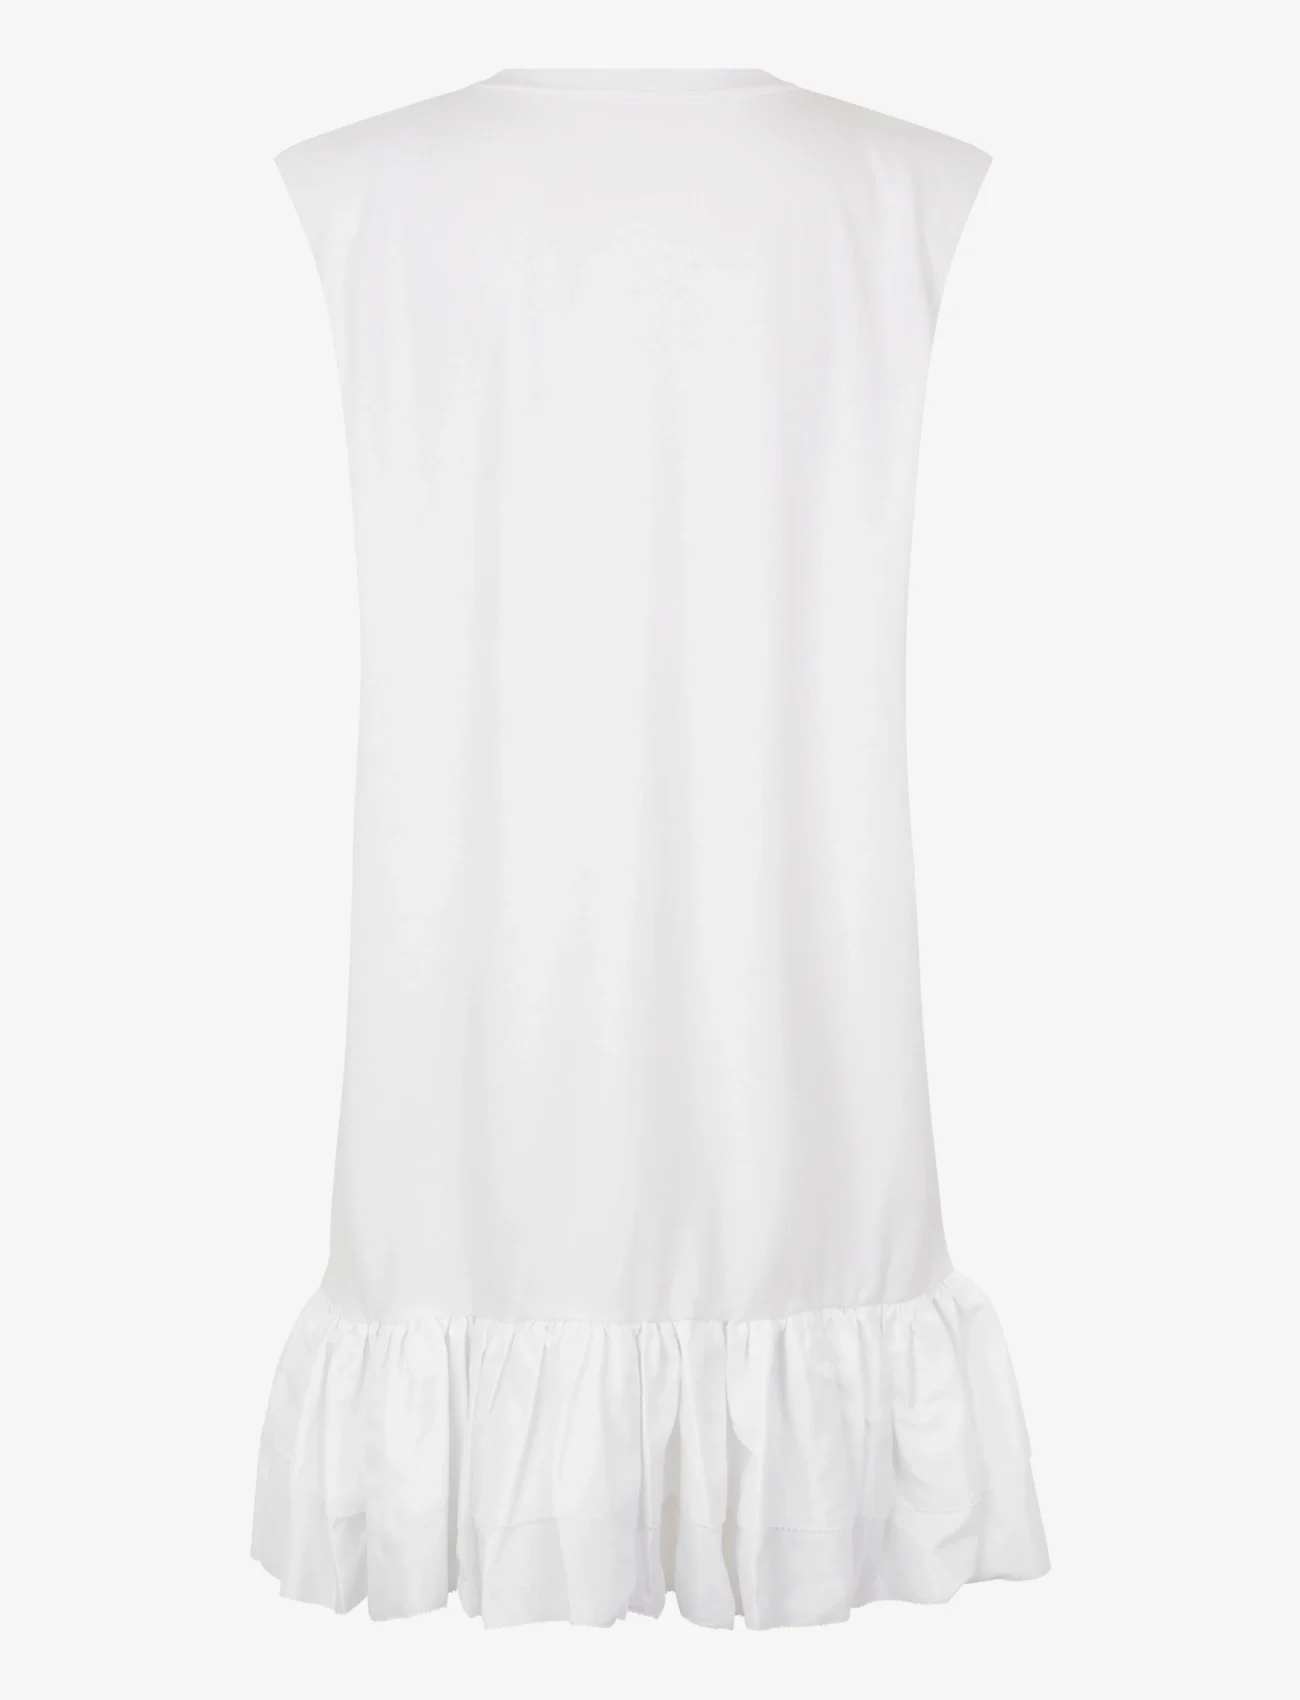 Custommade - Joan - t-shirtkjoler - 001 bright white - 1